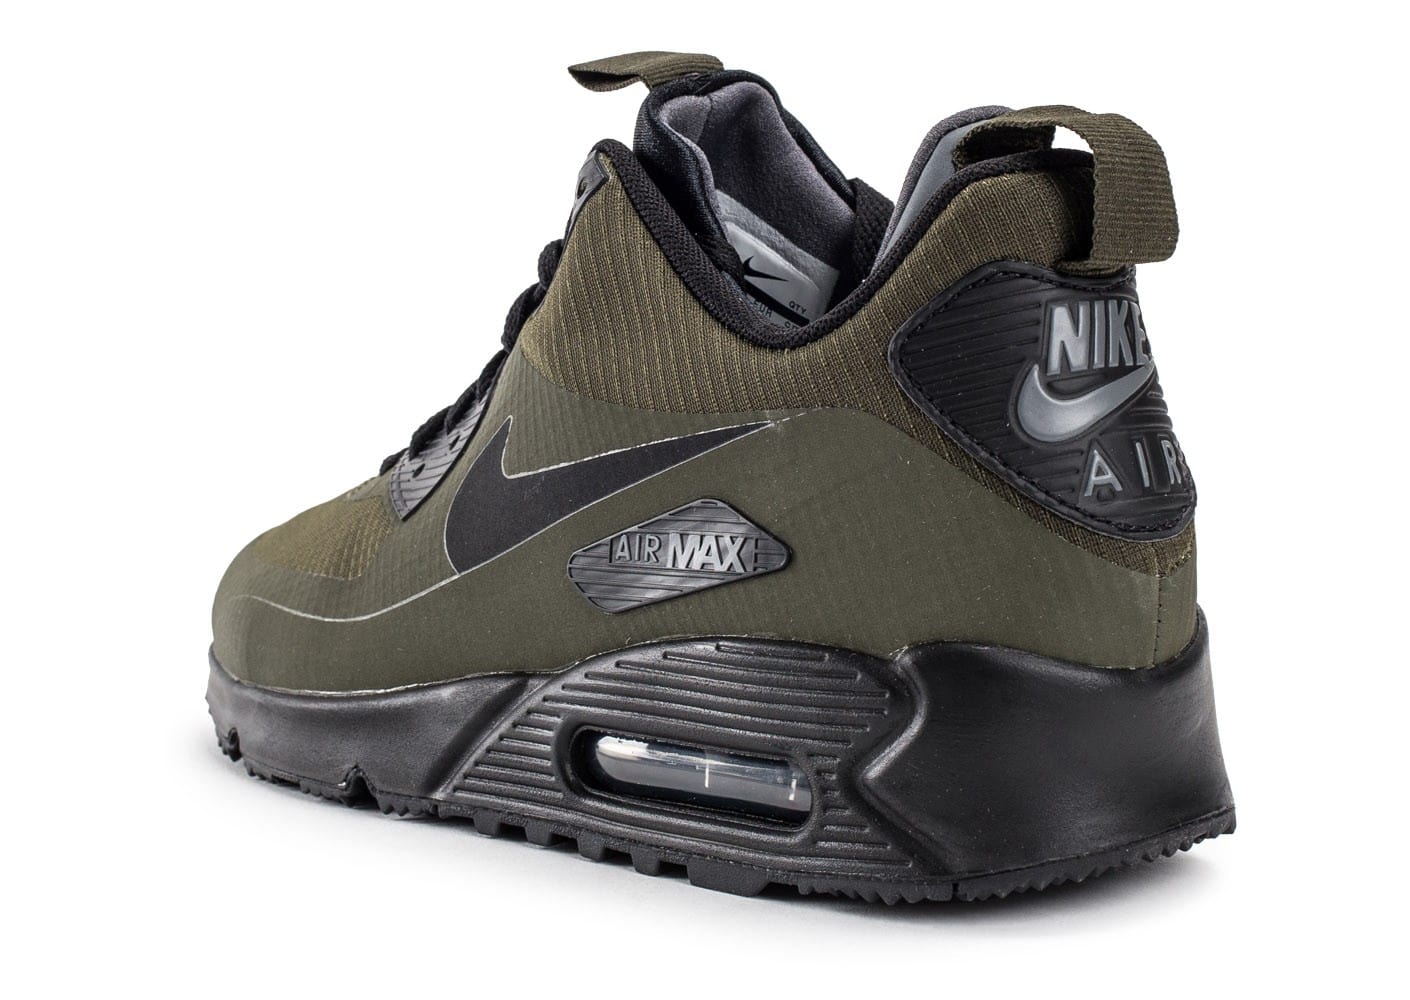 nike air max 90 mid winter kaki, ... Chaussures Nike Air Max 90 Mid Winter Green vue arrière ...